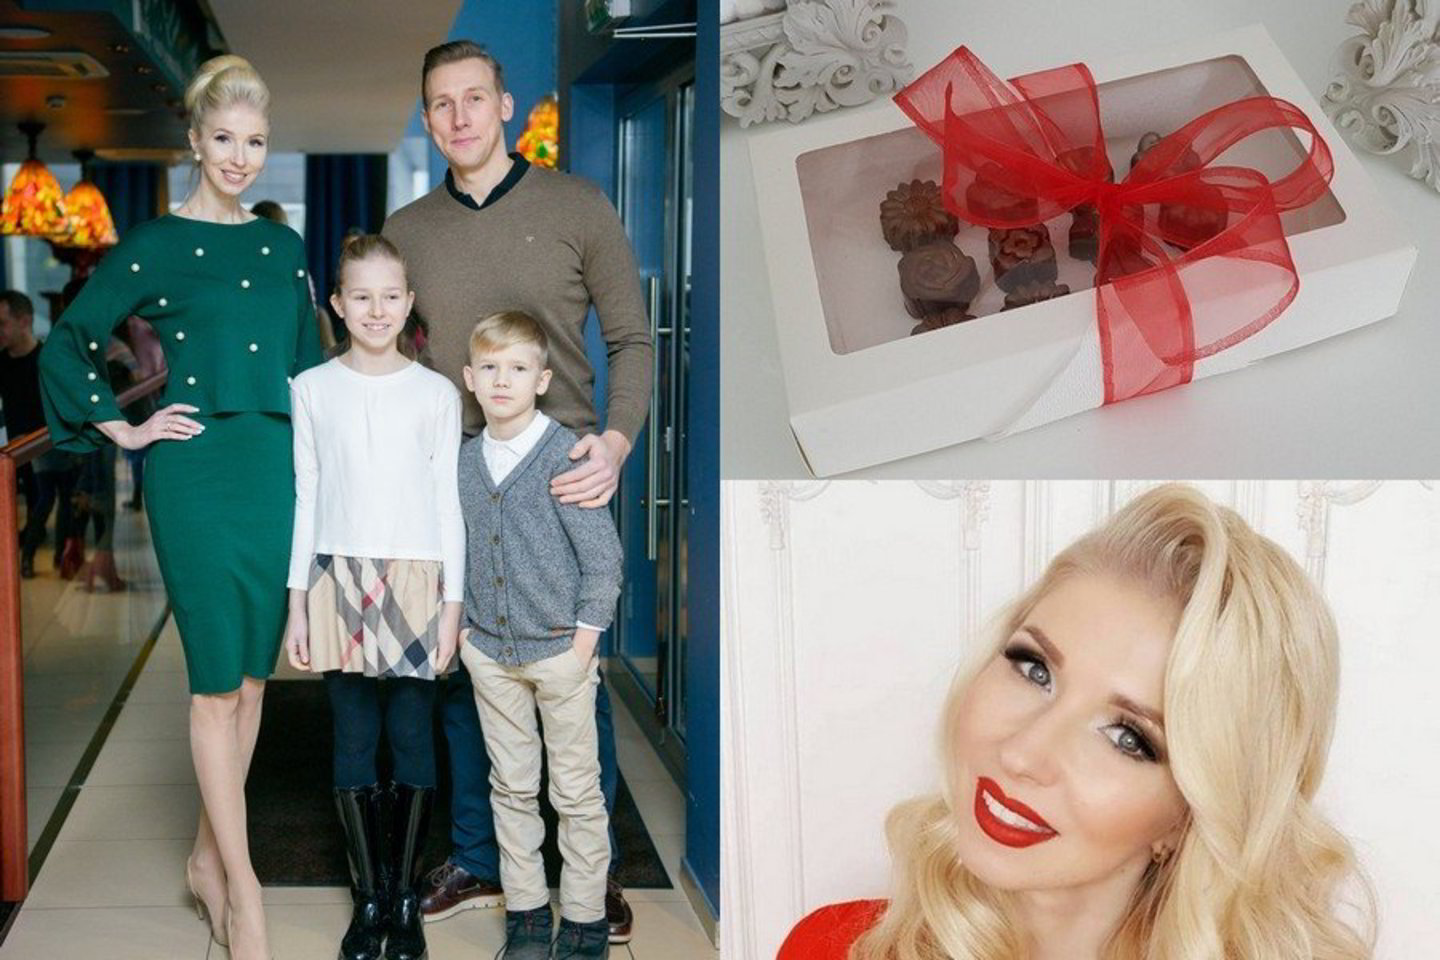 Verslininkė Inga Stumbrienė su šeima ir dukros dovanoti saldainiai Valentino dienos proga.<br> LR archyvo ir asmeninio albumo nuotr.